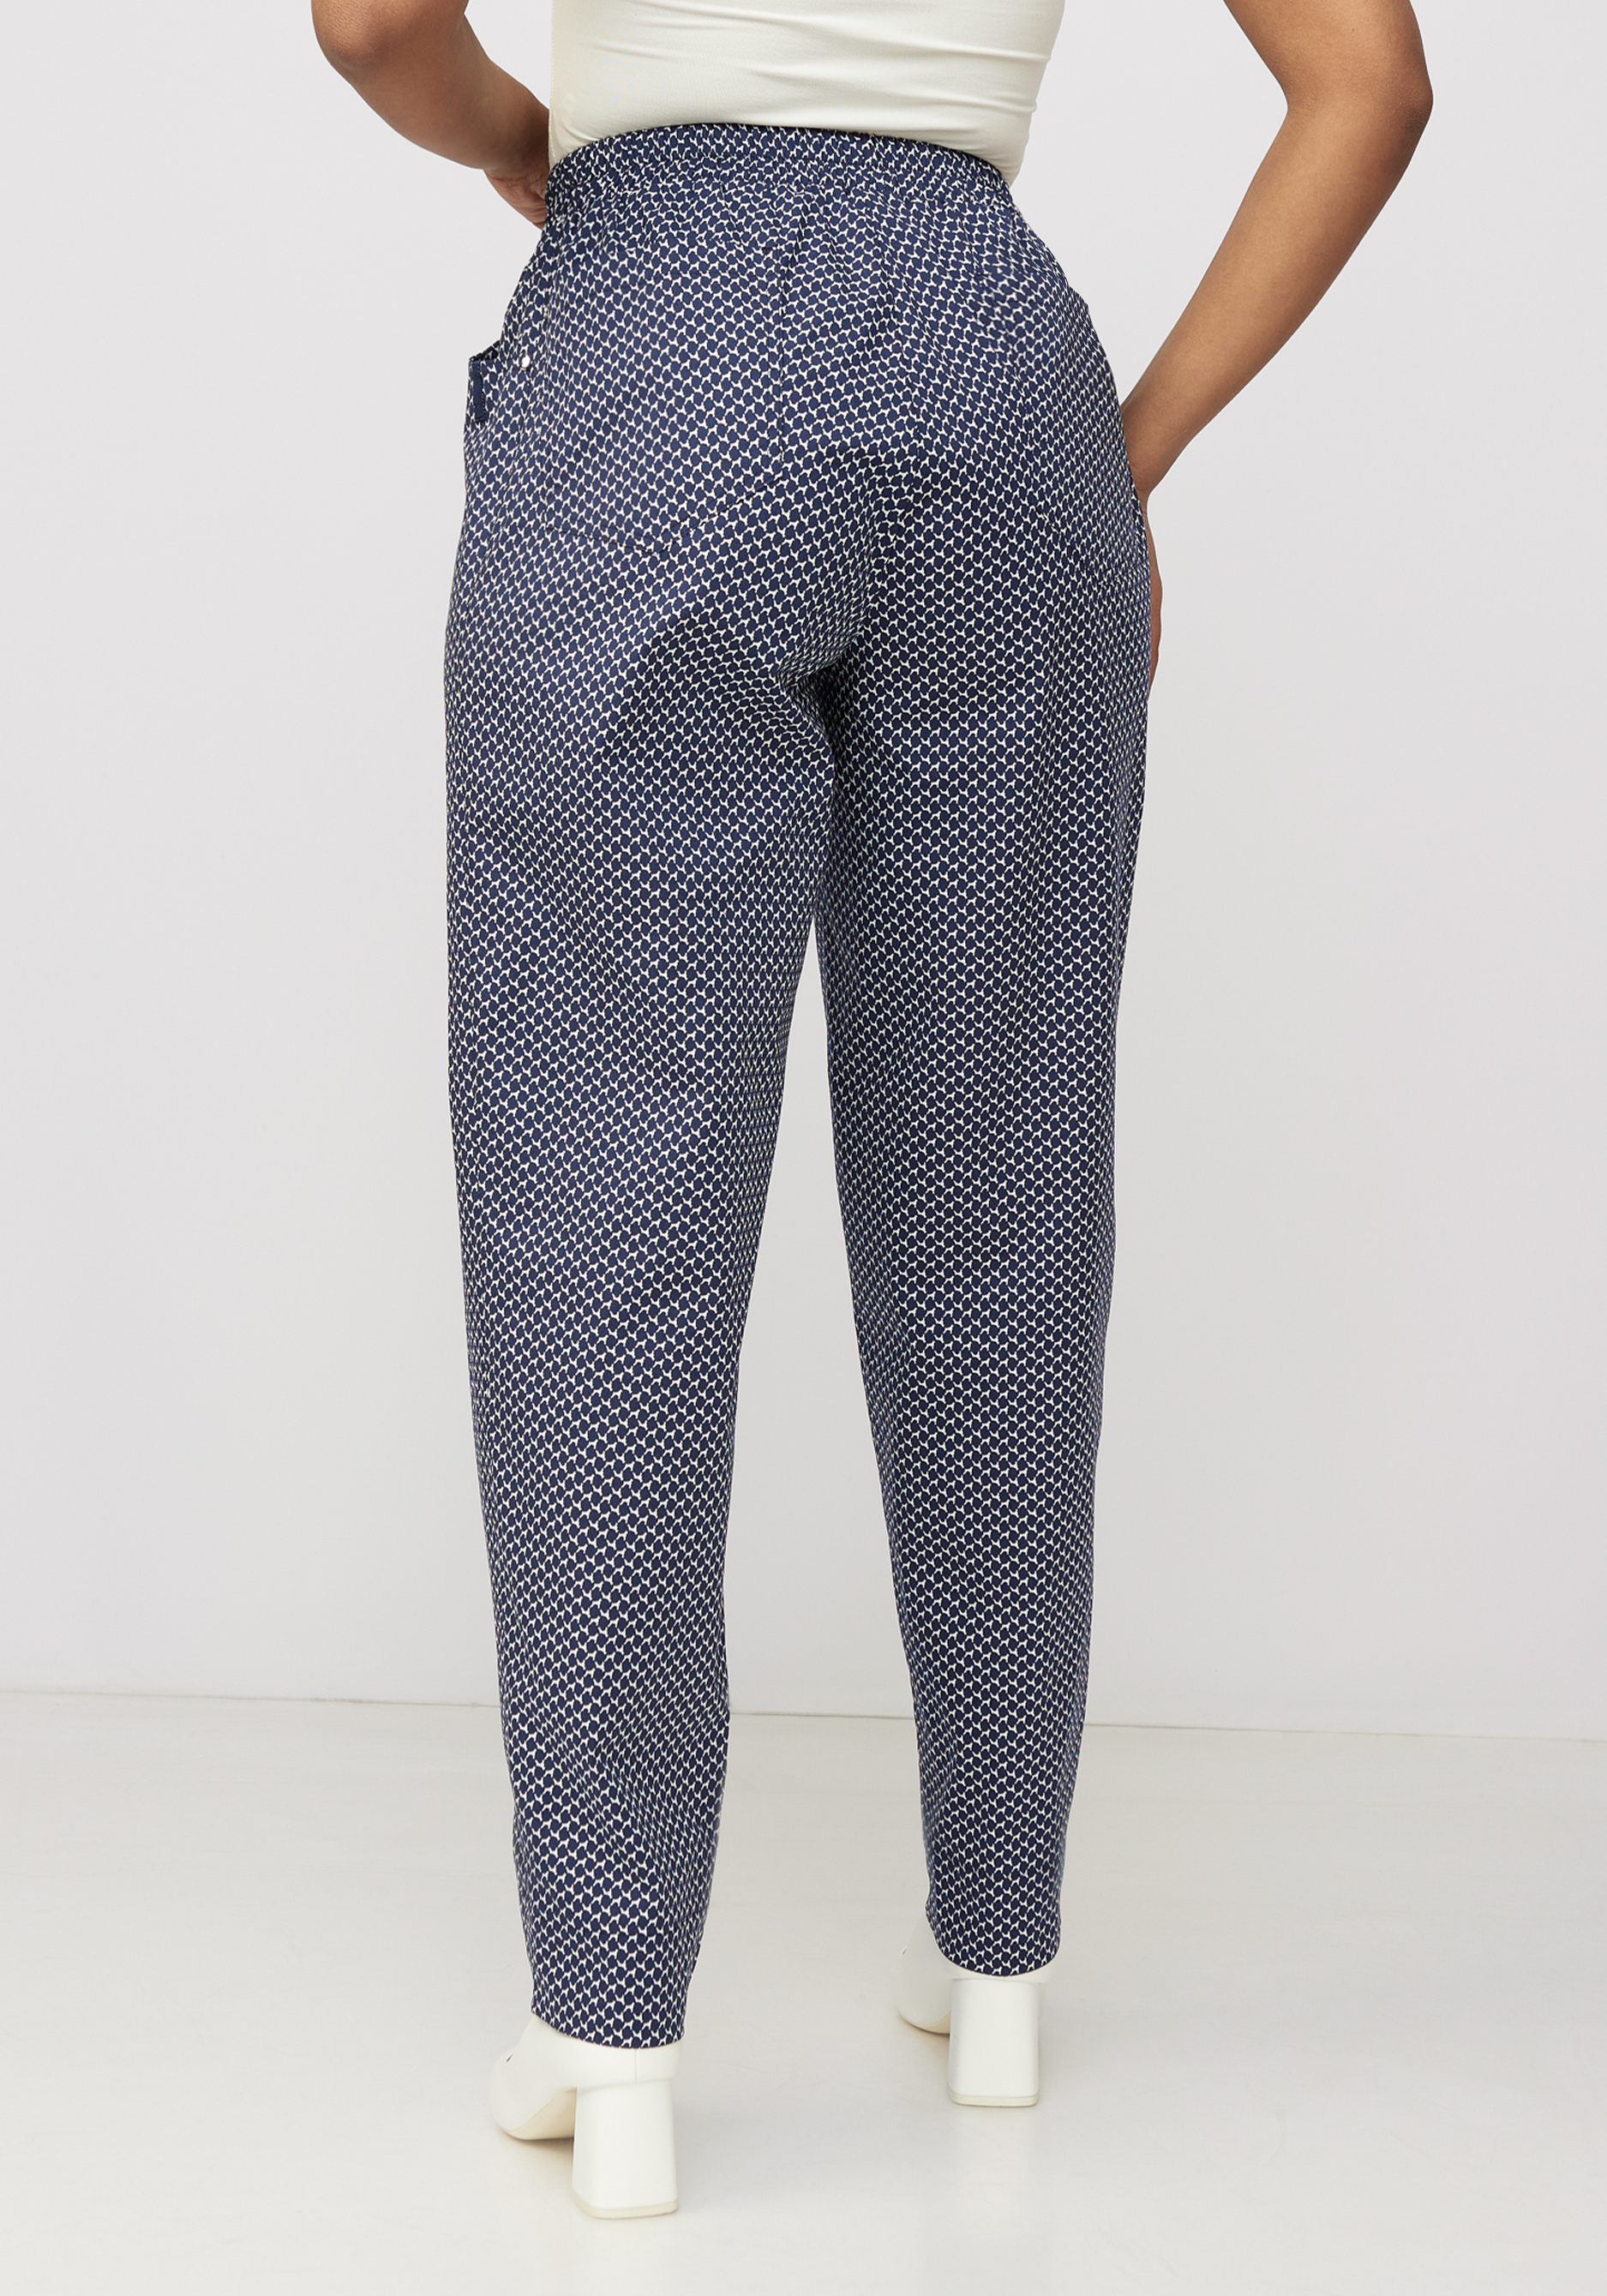 Хлопковые брюки "Бернадет" Averi, размер 54, цвет синий - фото 3